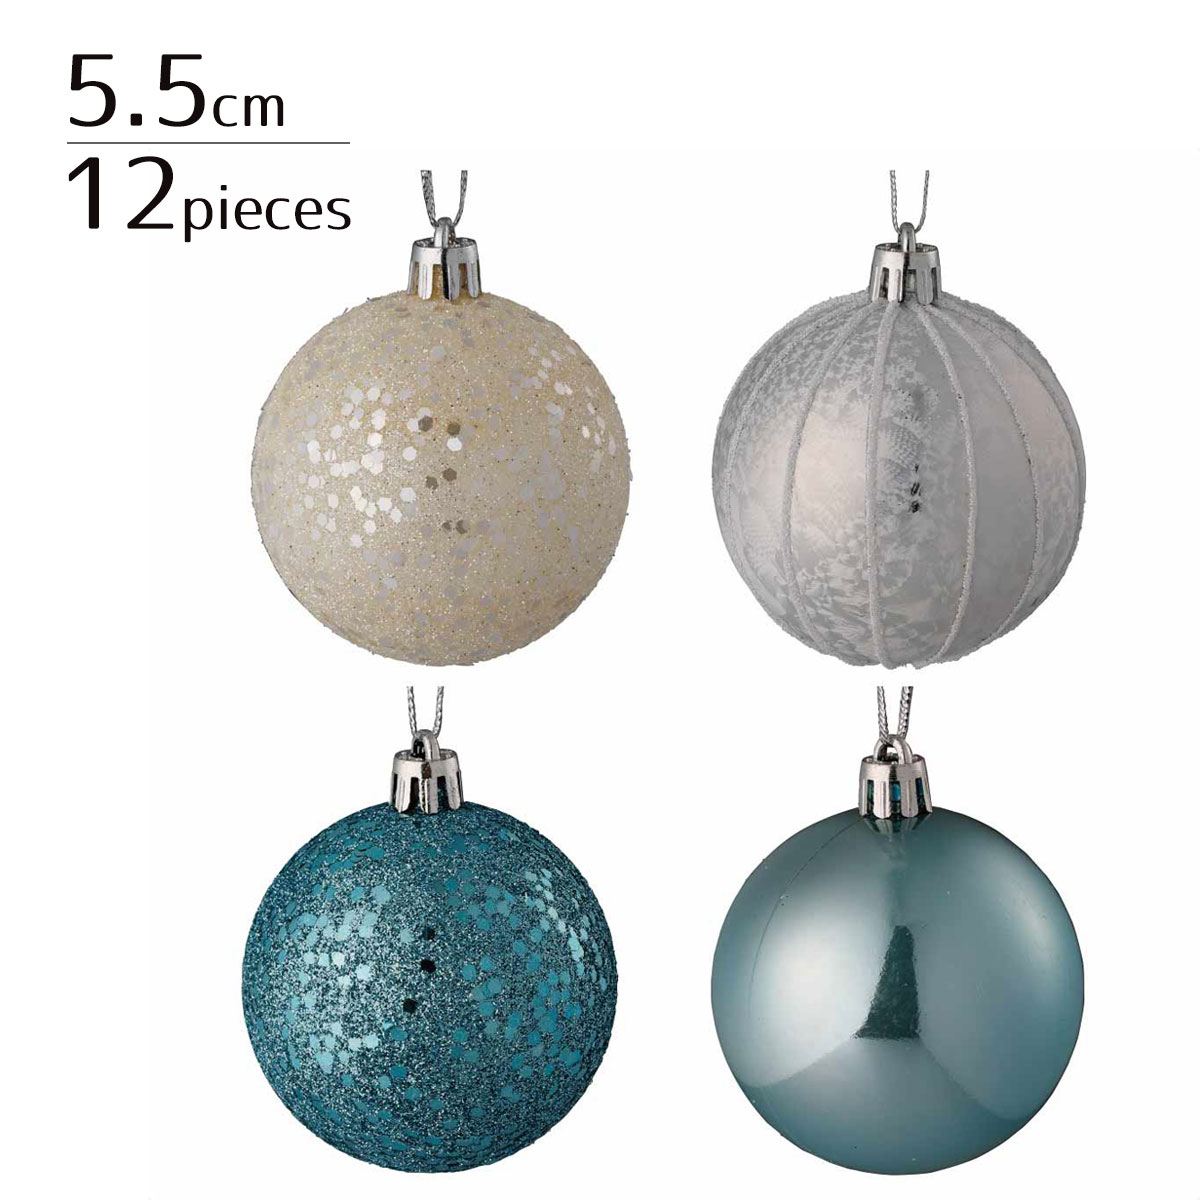 【12個入り／直径5.5cm】プラスチックオーナメントボール ブルーライン華やかでメタリックな質感のオーナメントボールで、ワンランク上のツリー装飾を！ボールの模様は4種類で各3個ずつ計12個がセットに。クリスマス 飾り 装飾 オーナメント ボール 1